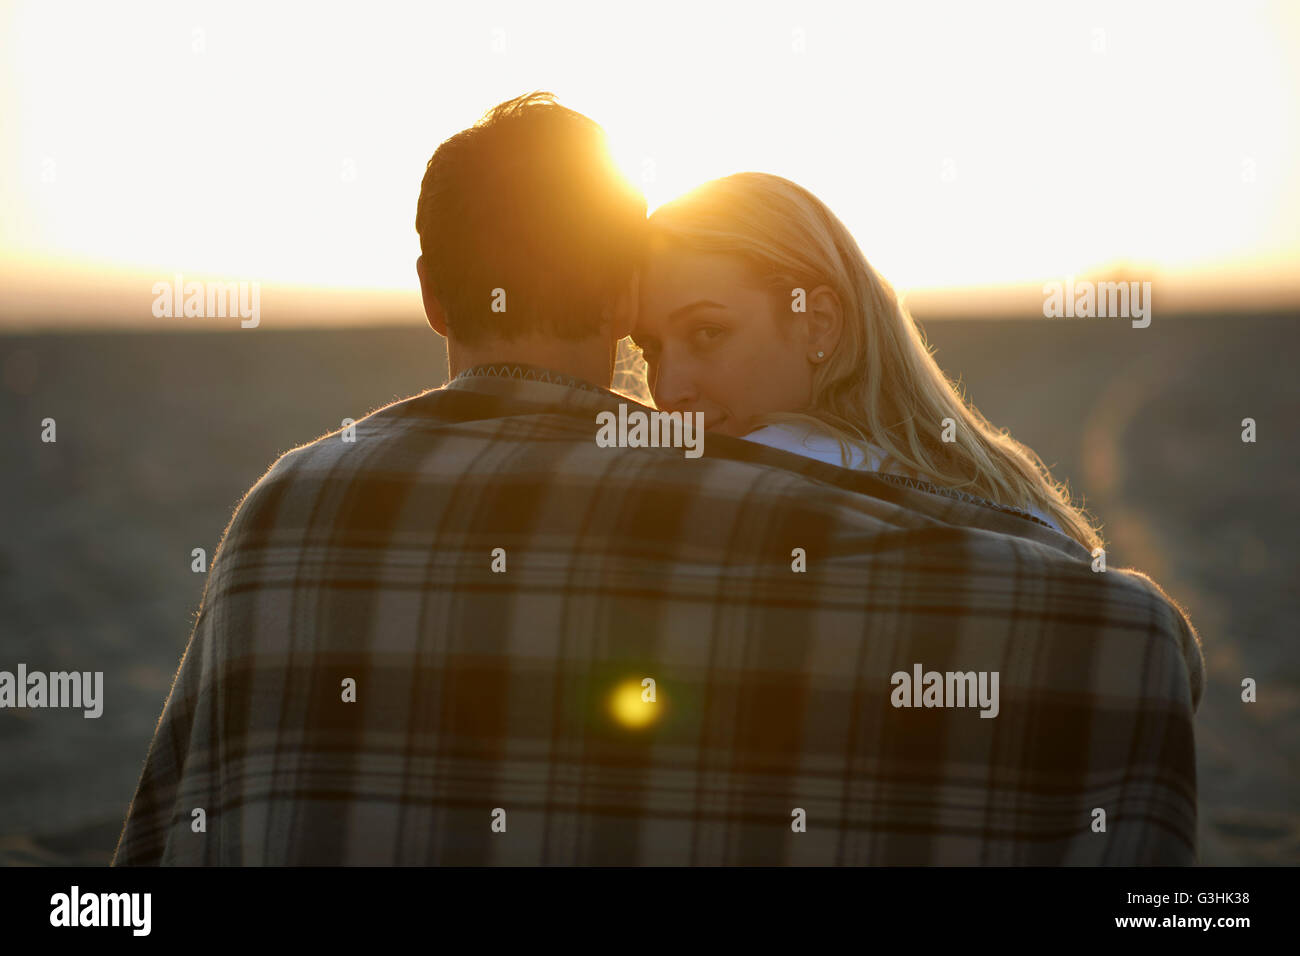 Couple on beach, au coucher du soleil, enveloppé dans une couverture, young woman looking over shoulder Banque D'Images